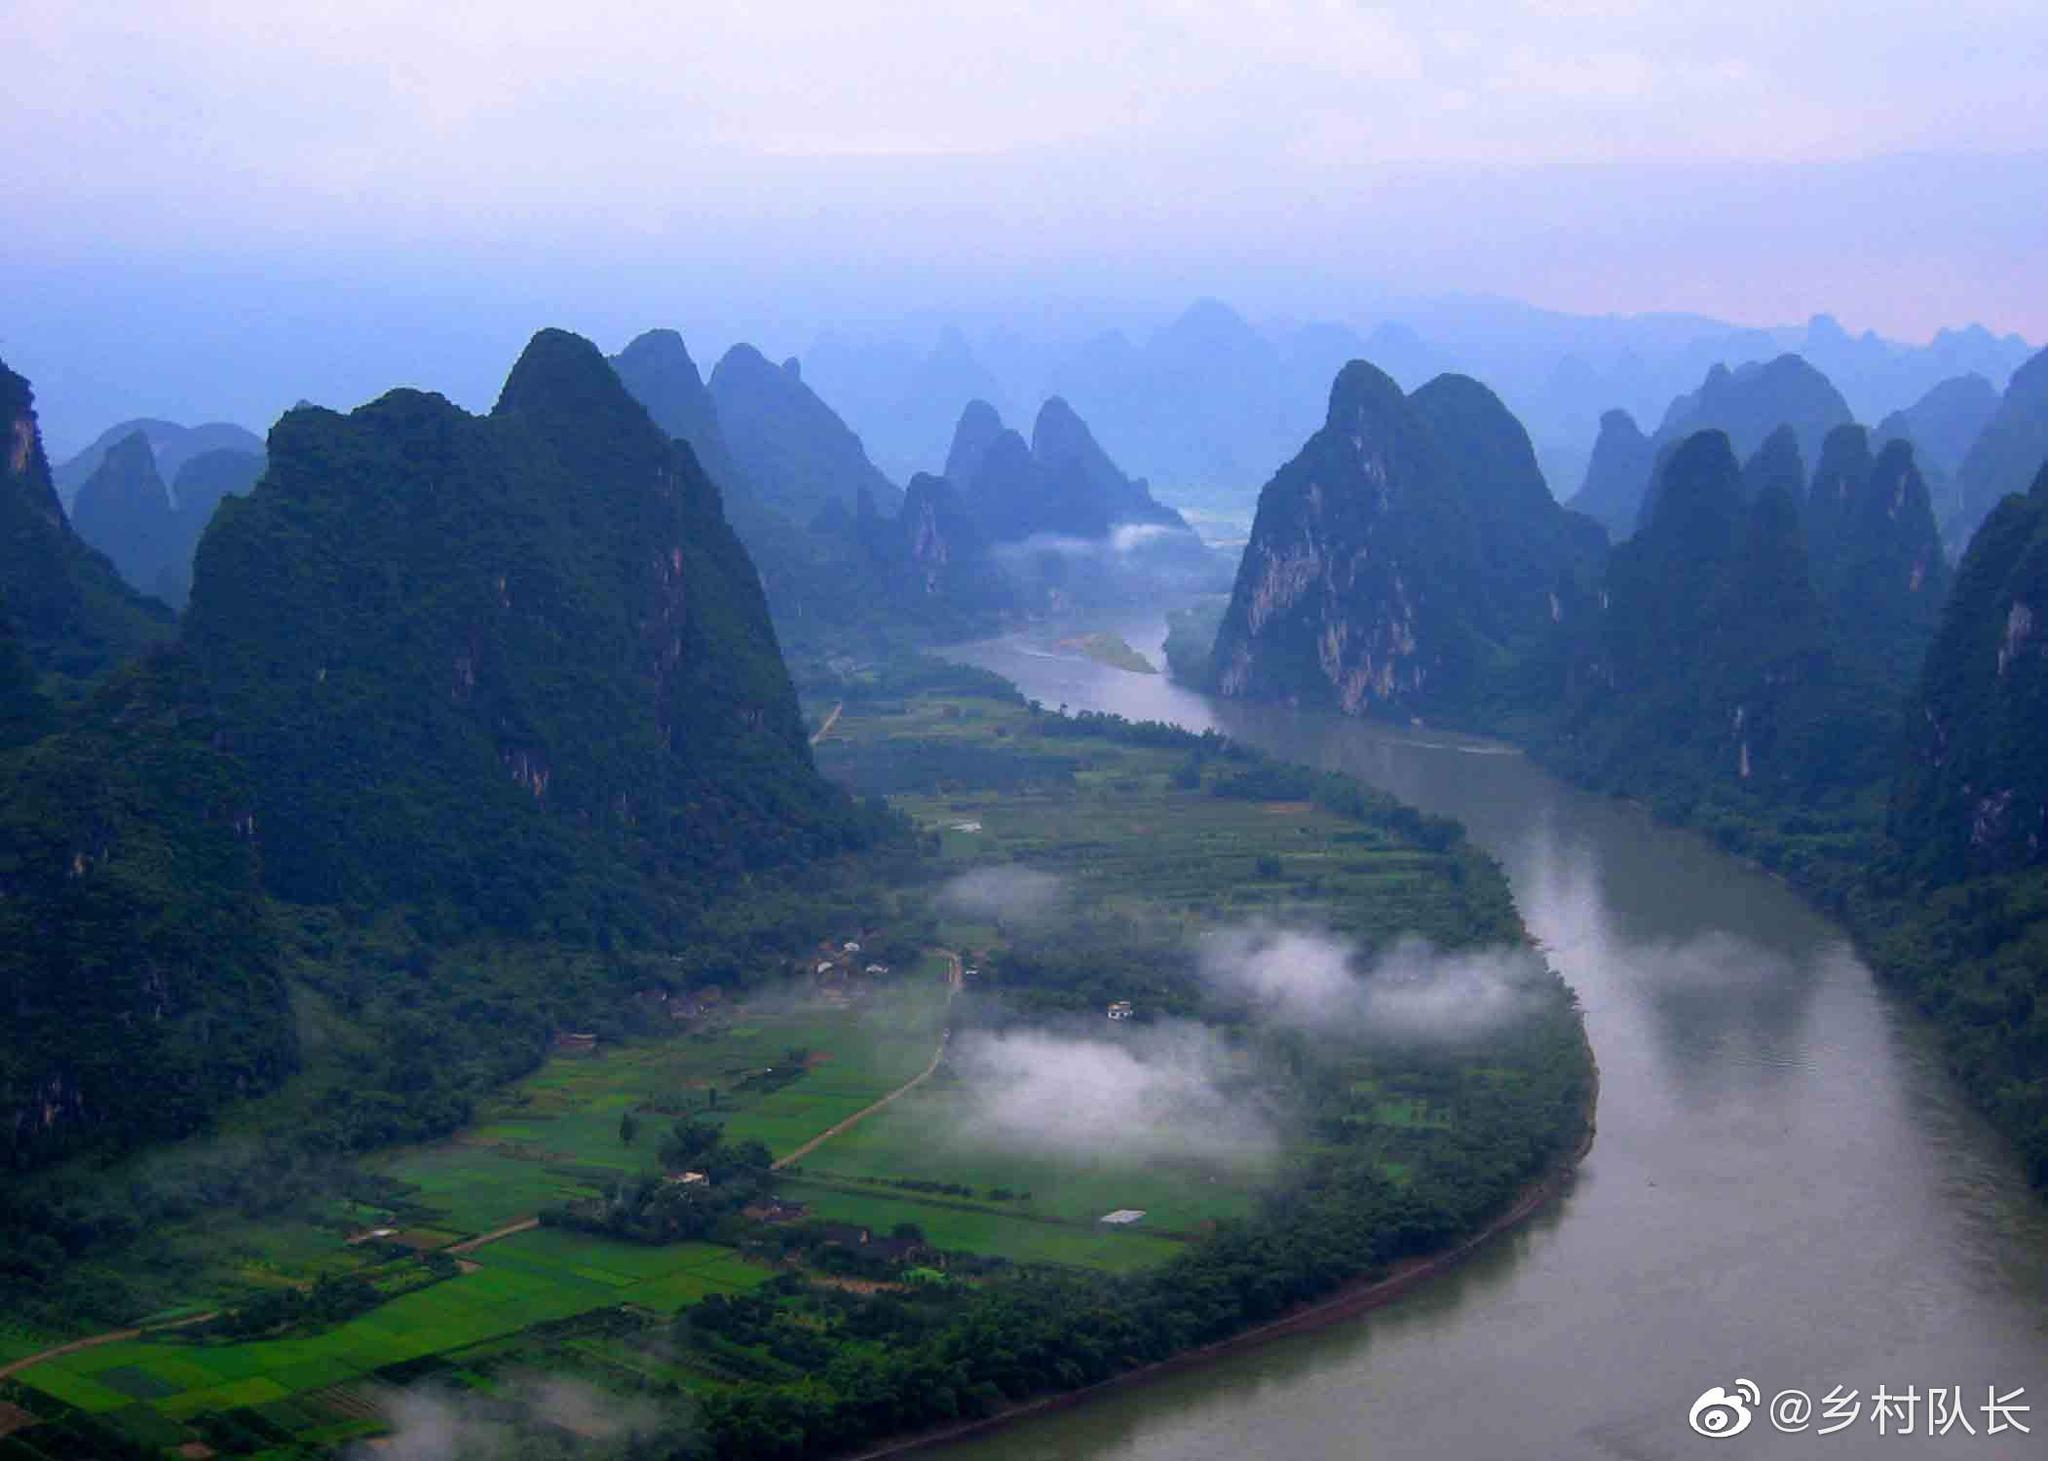 【携程攻略】灵川漓江风景名胜区景点,桂林山水甲天下，说的就是漓江，这里集中了桂林山水的精华，一路景色…